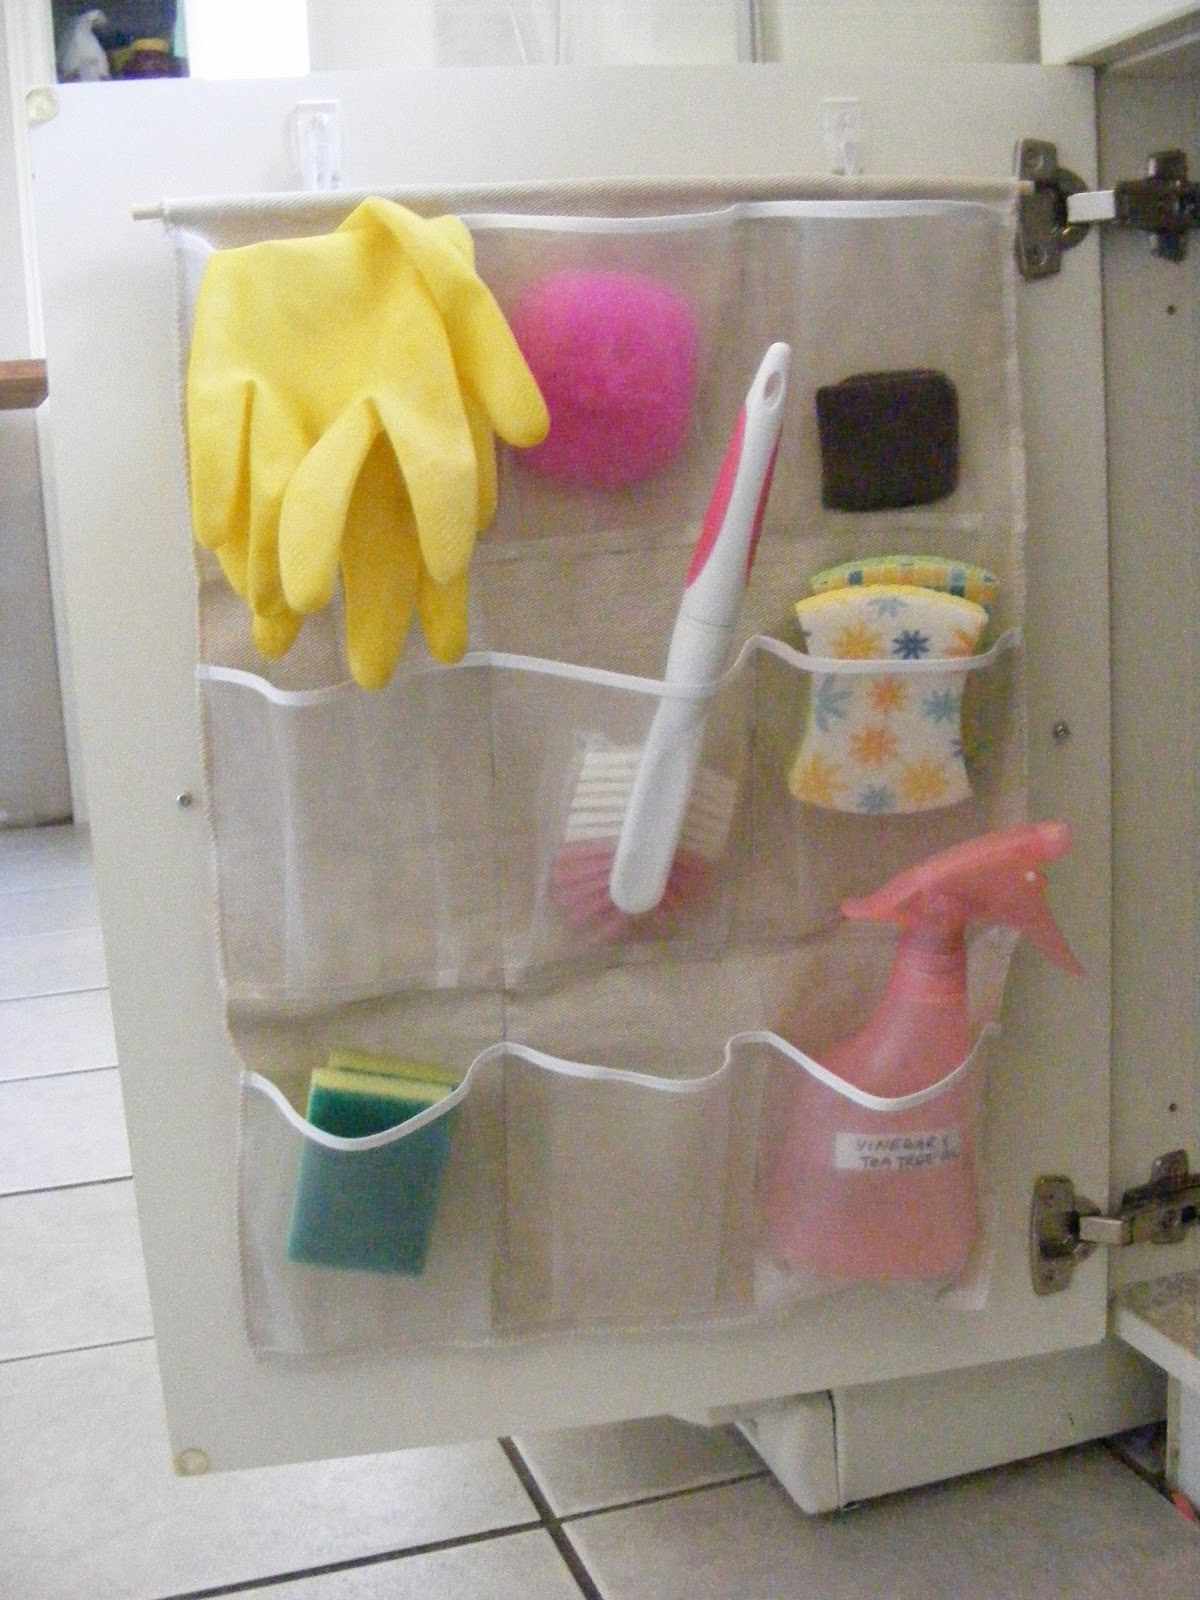 Ein Taschenorganizer mit Reinigungsprodukten